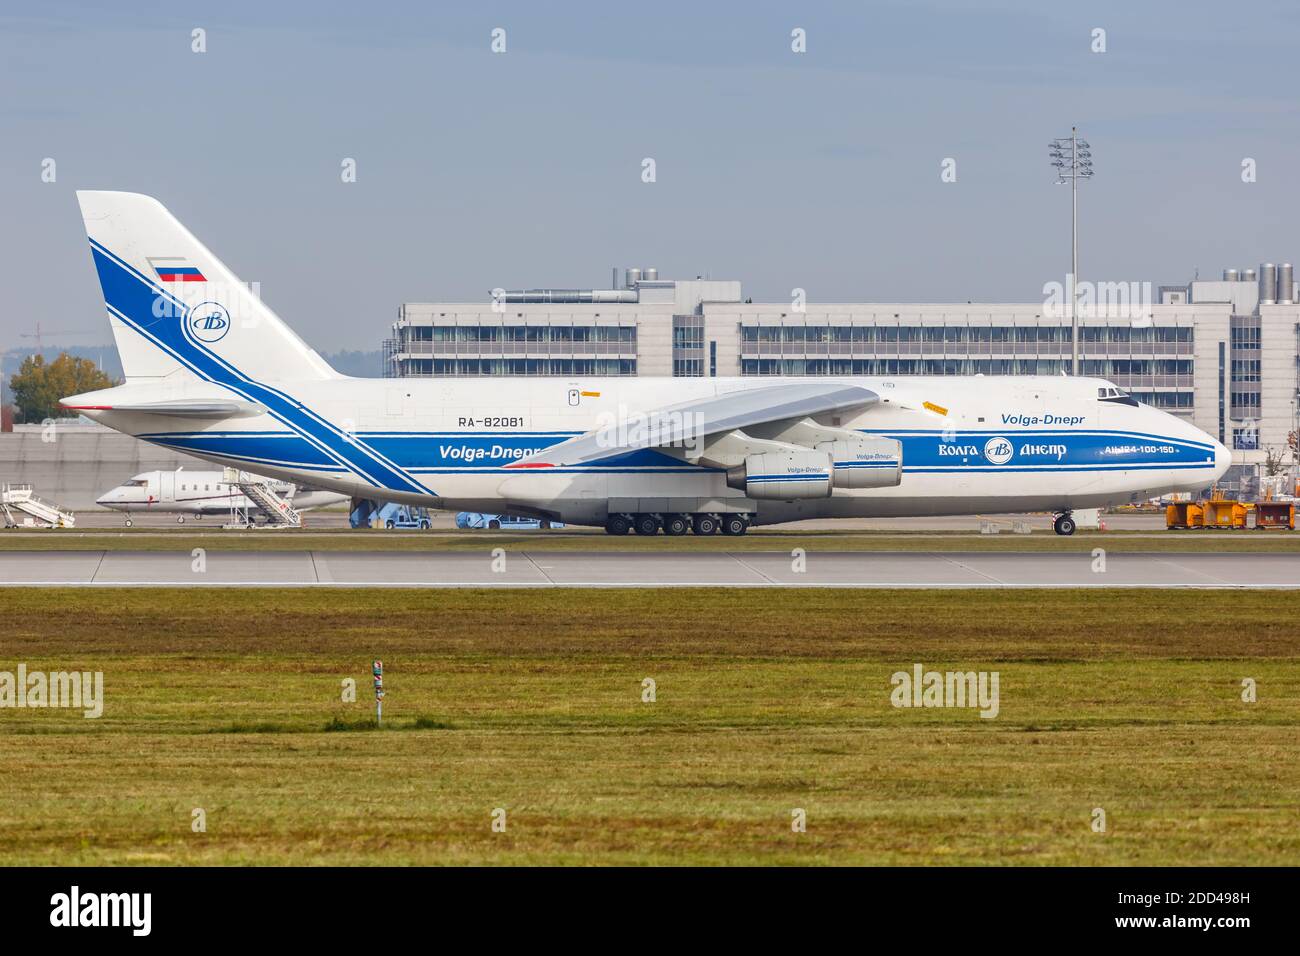 Munich, Allemagne - 21 octobre 2020: Volga-Dnepr Airlines Antonov an-124-100 avion à l'aéroport de Munich en Allemagne. Banque D'Images